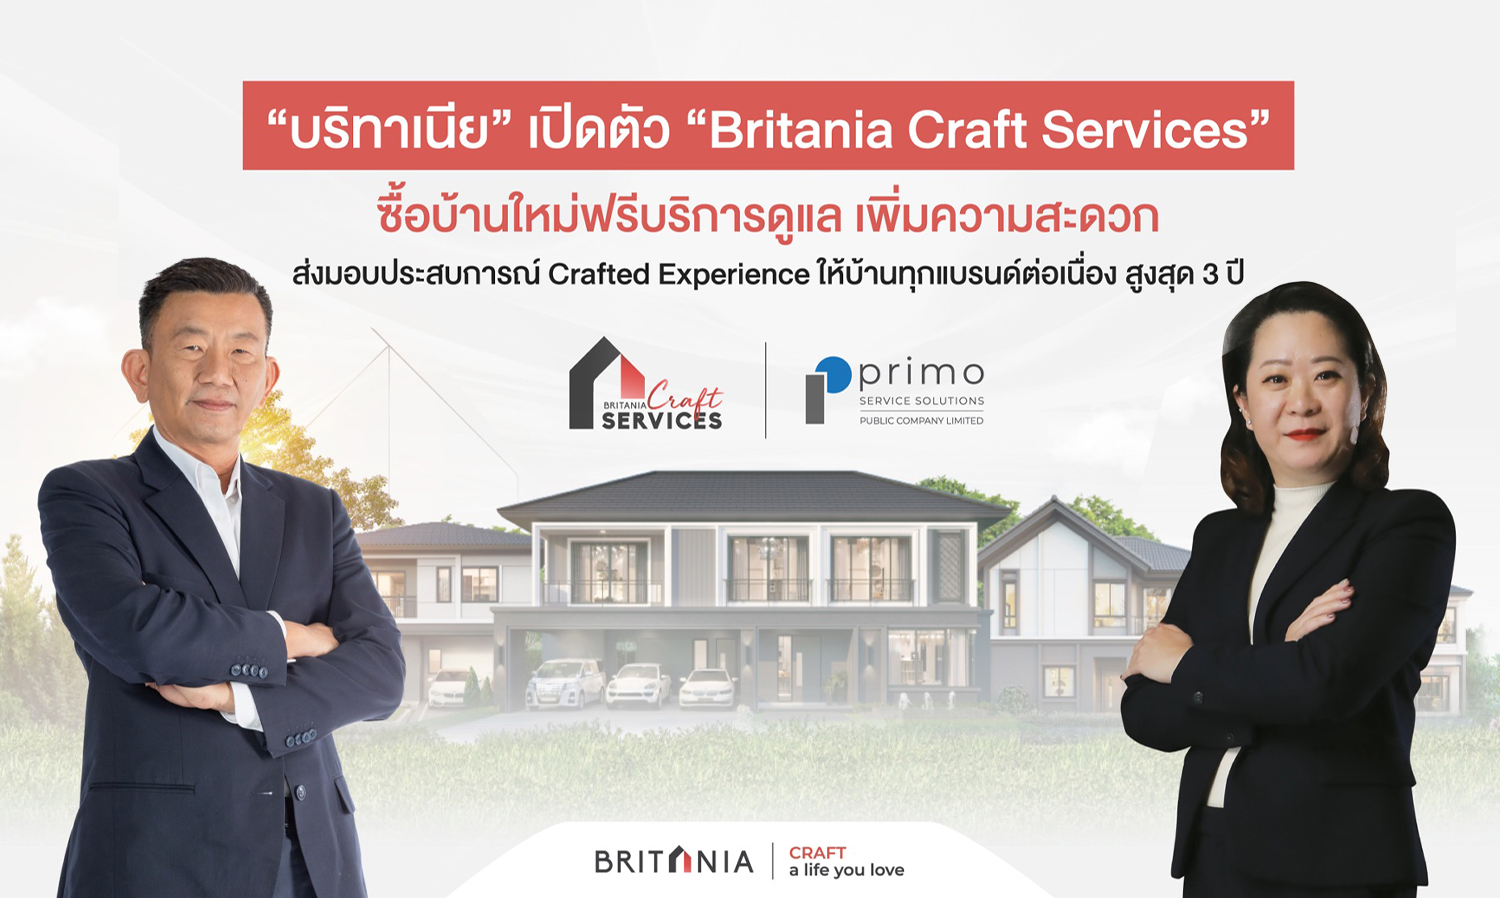 บริทาเนีย เปิดตัว Britania Craft Services ซื้อบ้านใหม่ ฟรีบริการดูแล มอบประสบการณ์ Crafted Experience